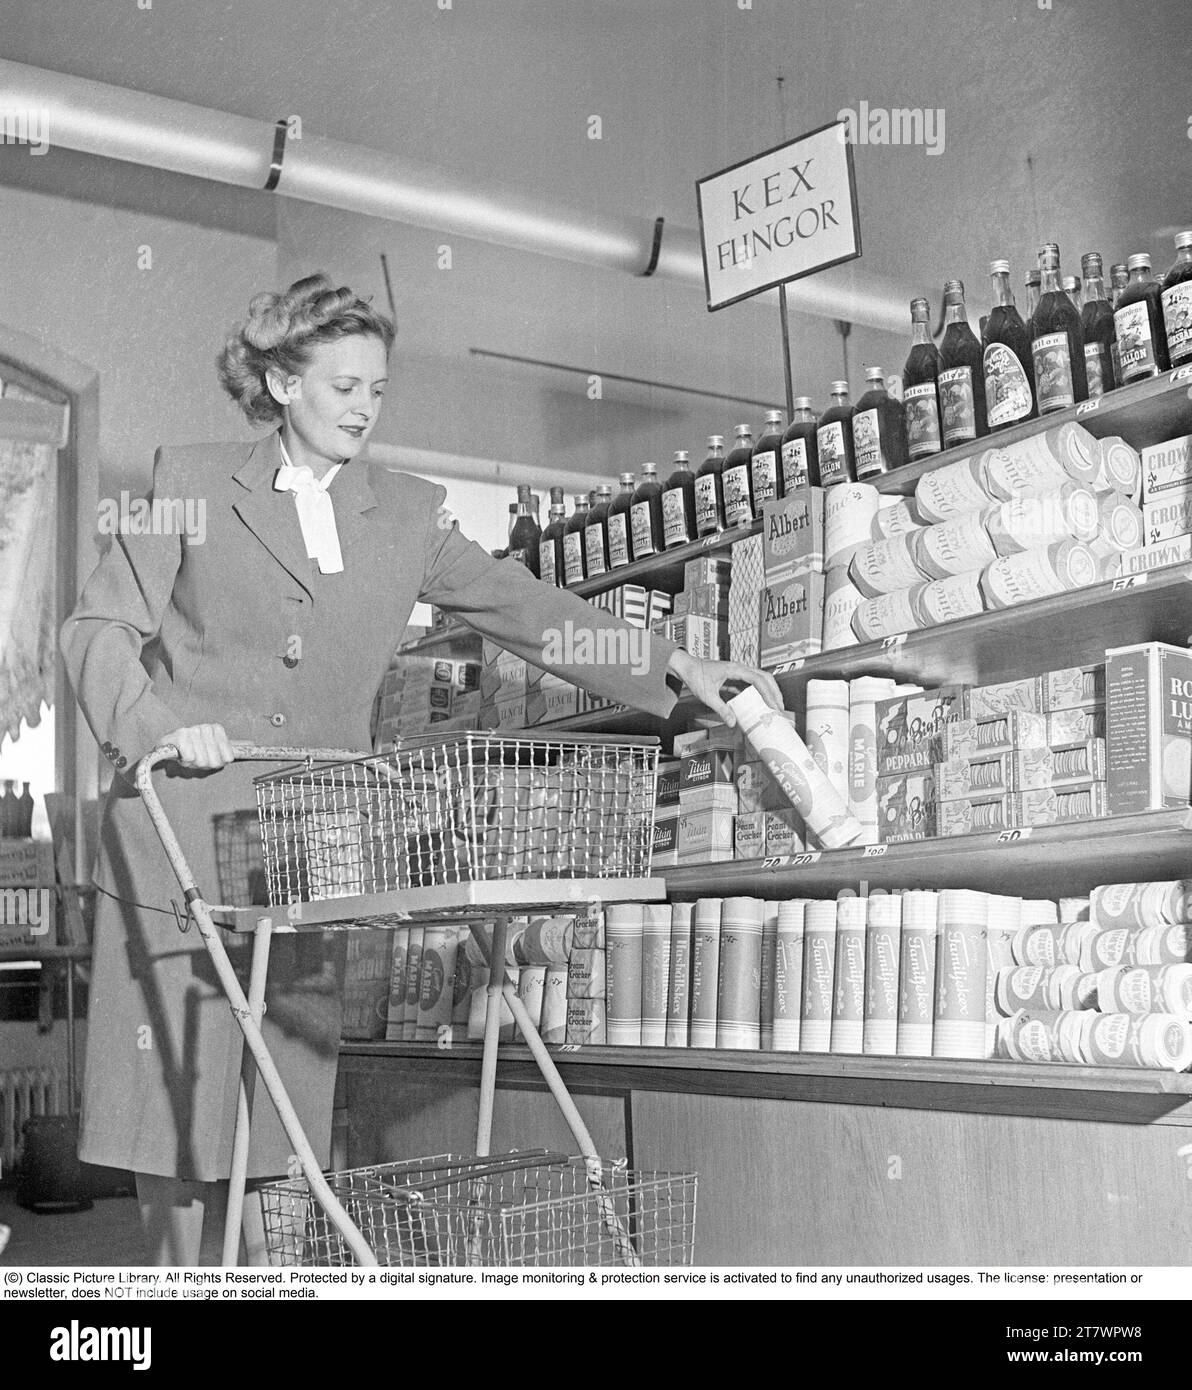 Shopping in den 1940er Jahren Eine Frau kauft in einem Selbstbedienungsladen ein. Sowohl die Idee des Self-Service als auch der Einkaufswagen kamen aus Amerika und zielten darauf ab, den Umsatz zu steigern. Der Kunde konnte sich die Lebensmittel aussuchen, in den Einkaufswagen legen und zur Kasse gehen. Zu dieser Zeit wurde diese Art des modernen Einkaufs in Schweden neu eingeführt. 1949. Kristoffersson Ref. AS47-4 Stockfoto